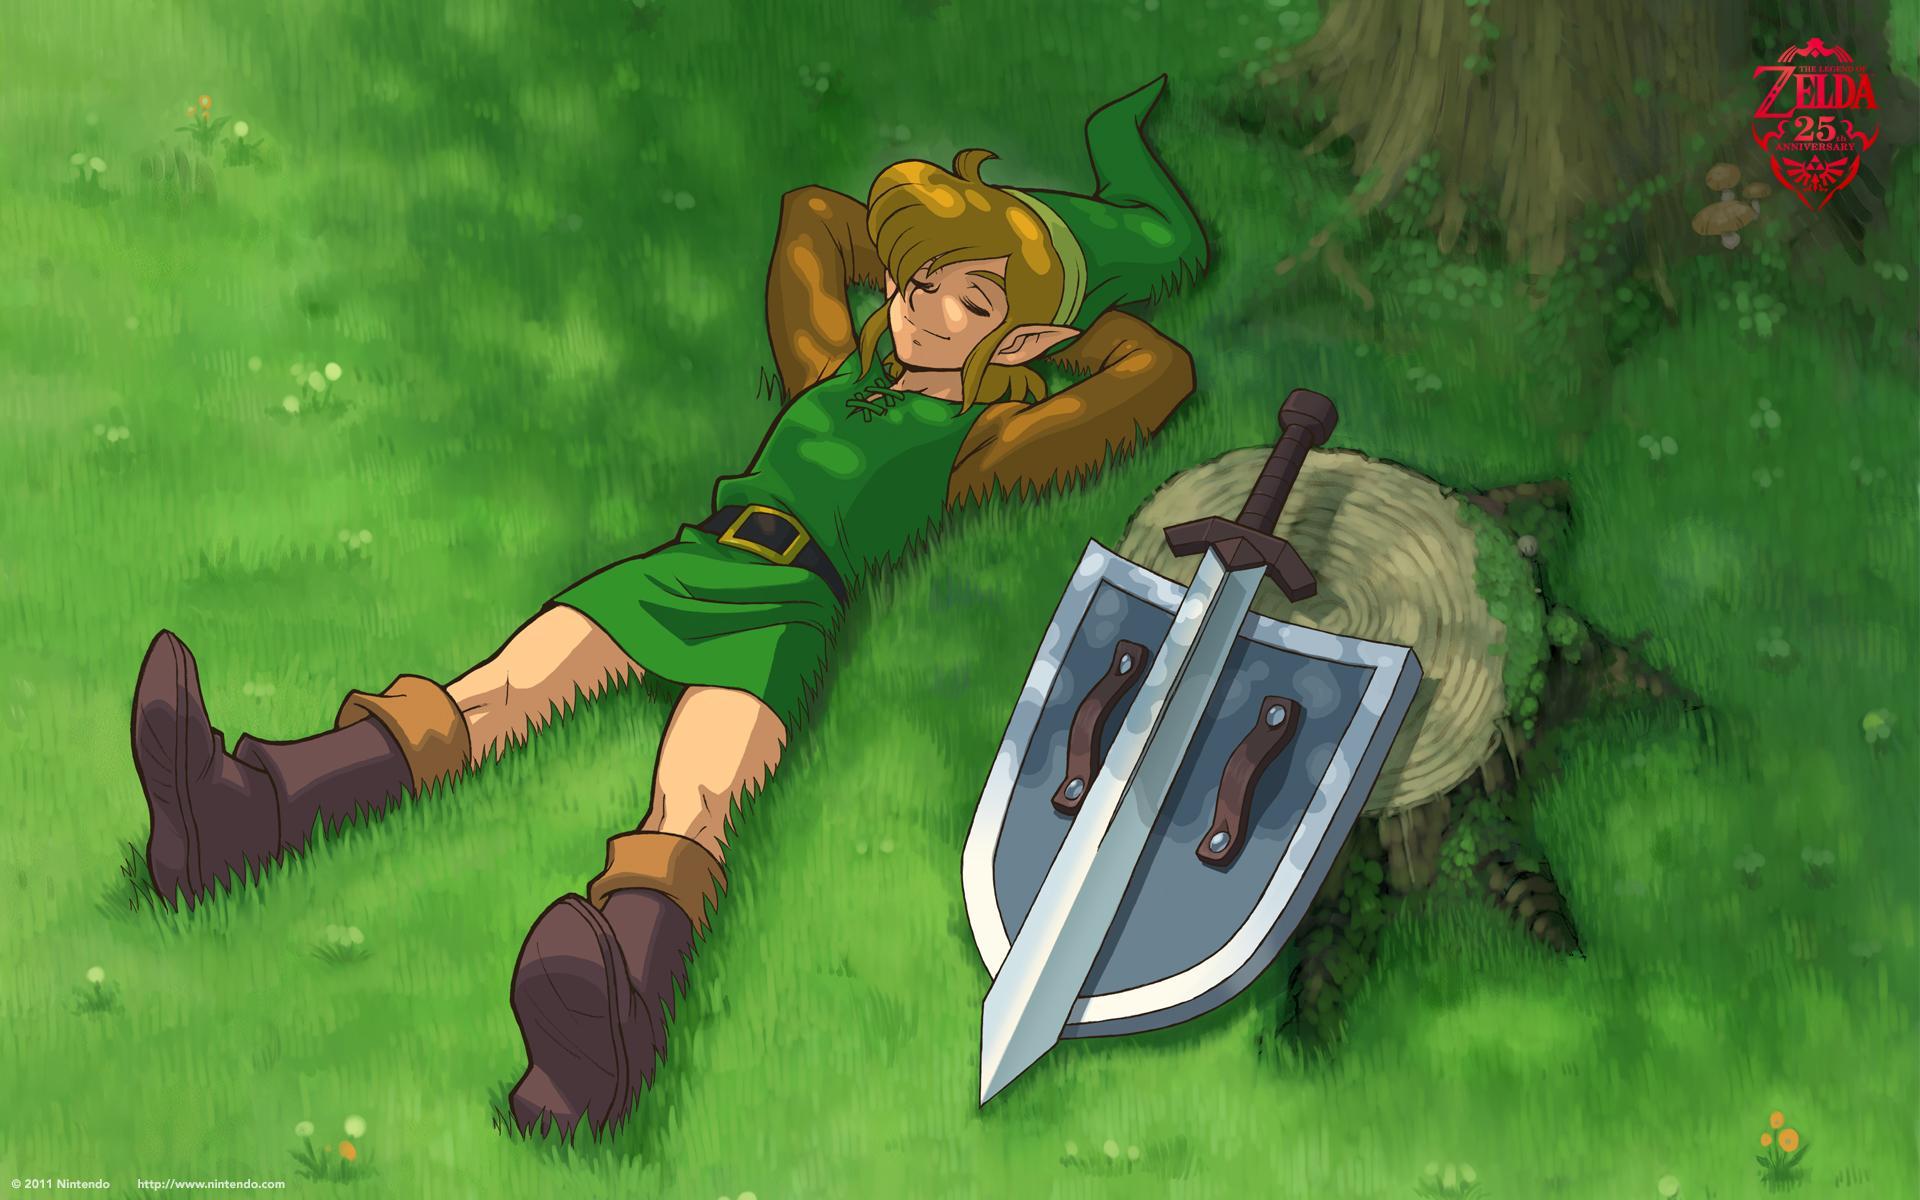 4K & HD Zelda: Link's Awakening Wallpaper for Your Next